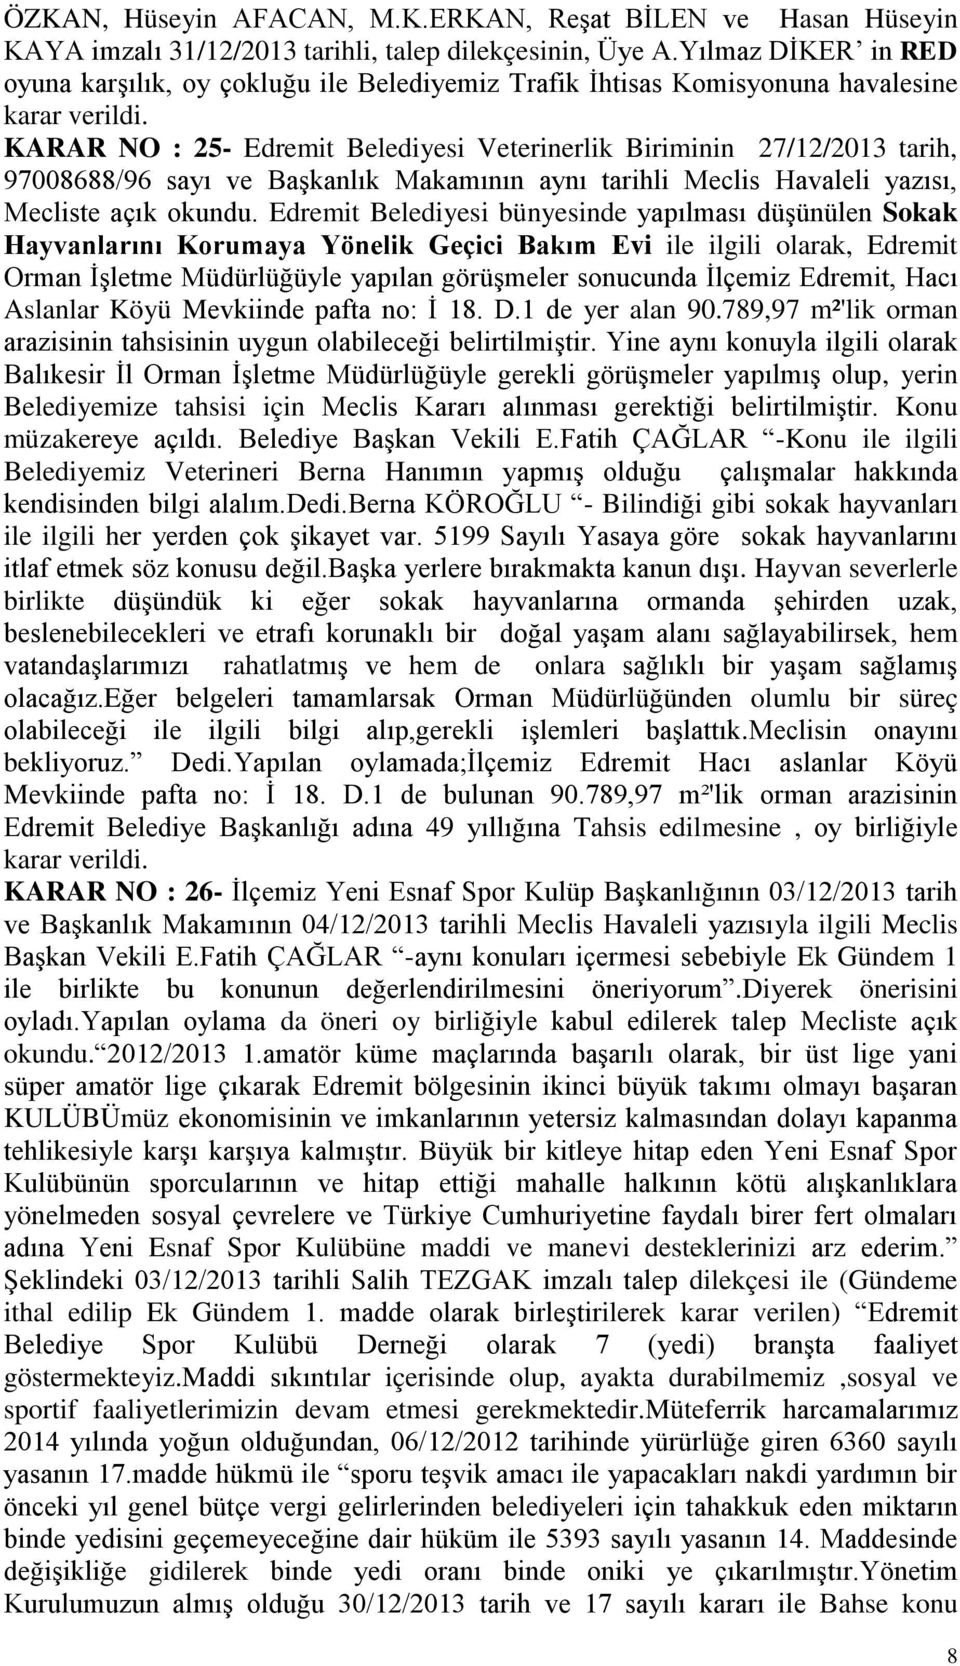 KARAR NO : 25- Edremit Belediyesi Veterinerlik Biriminin 27/12/2013 tarih, 97008688/96 sayı ve Başkanlık Makamının aynı tarihli Meclis Havaleli yazısı, Mecliste açık okundu.